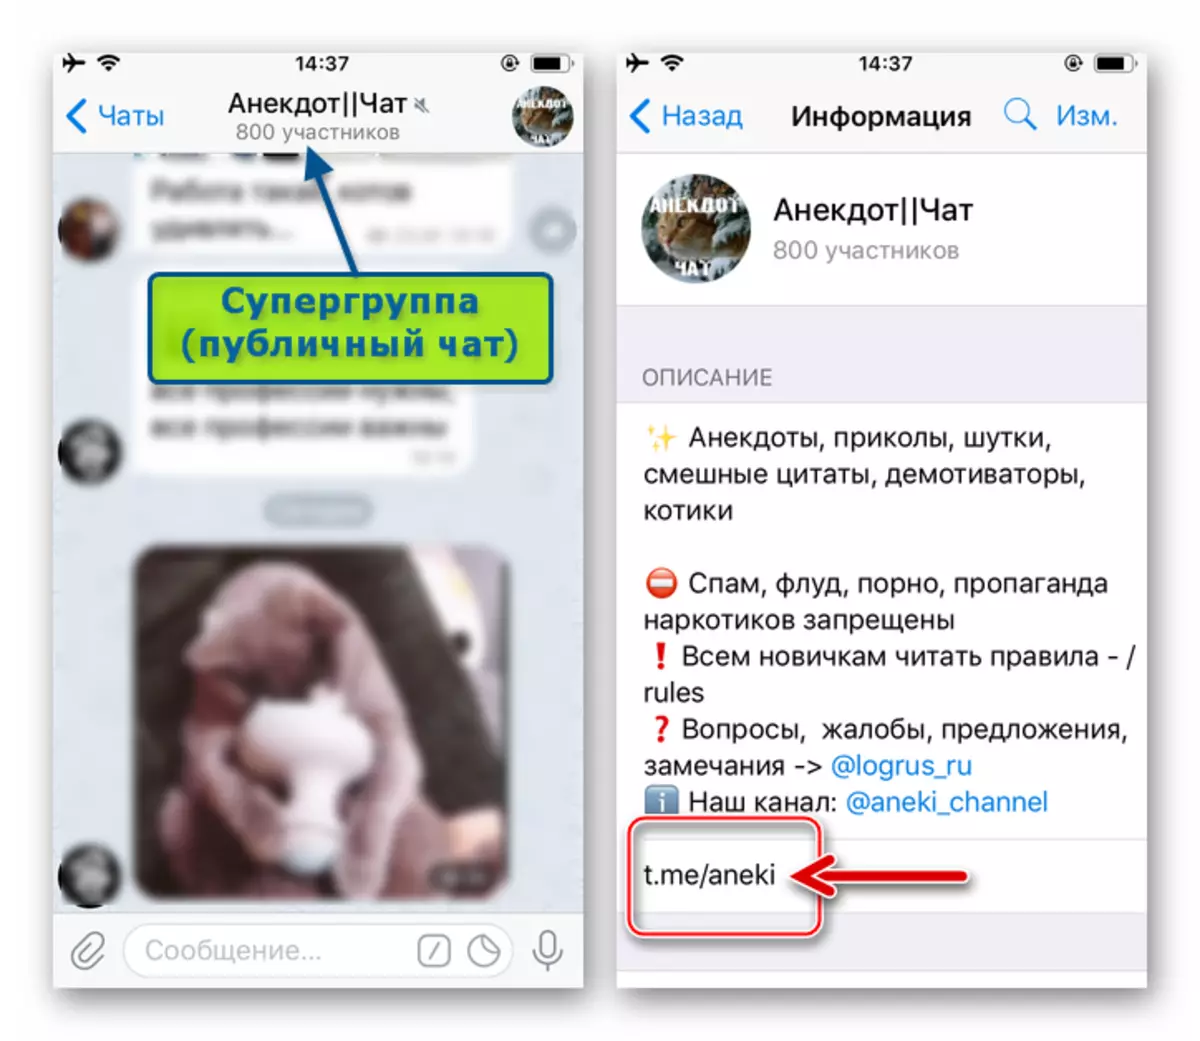 Telegram för iOS - länk till supergruppen (offentlig chatt) på informationsskärmen